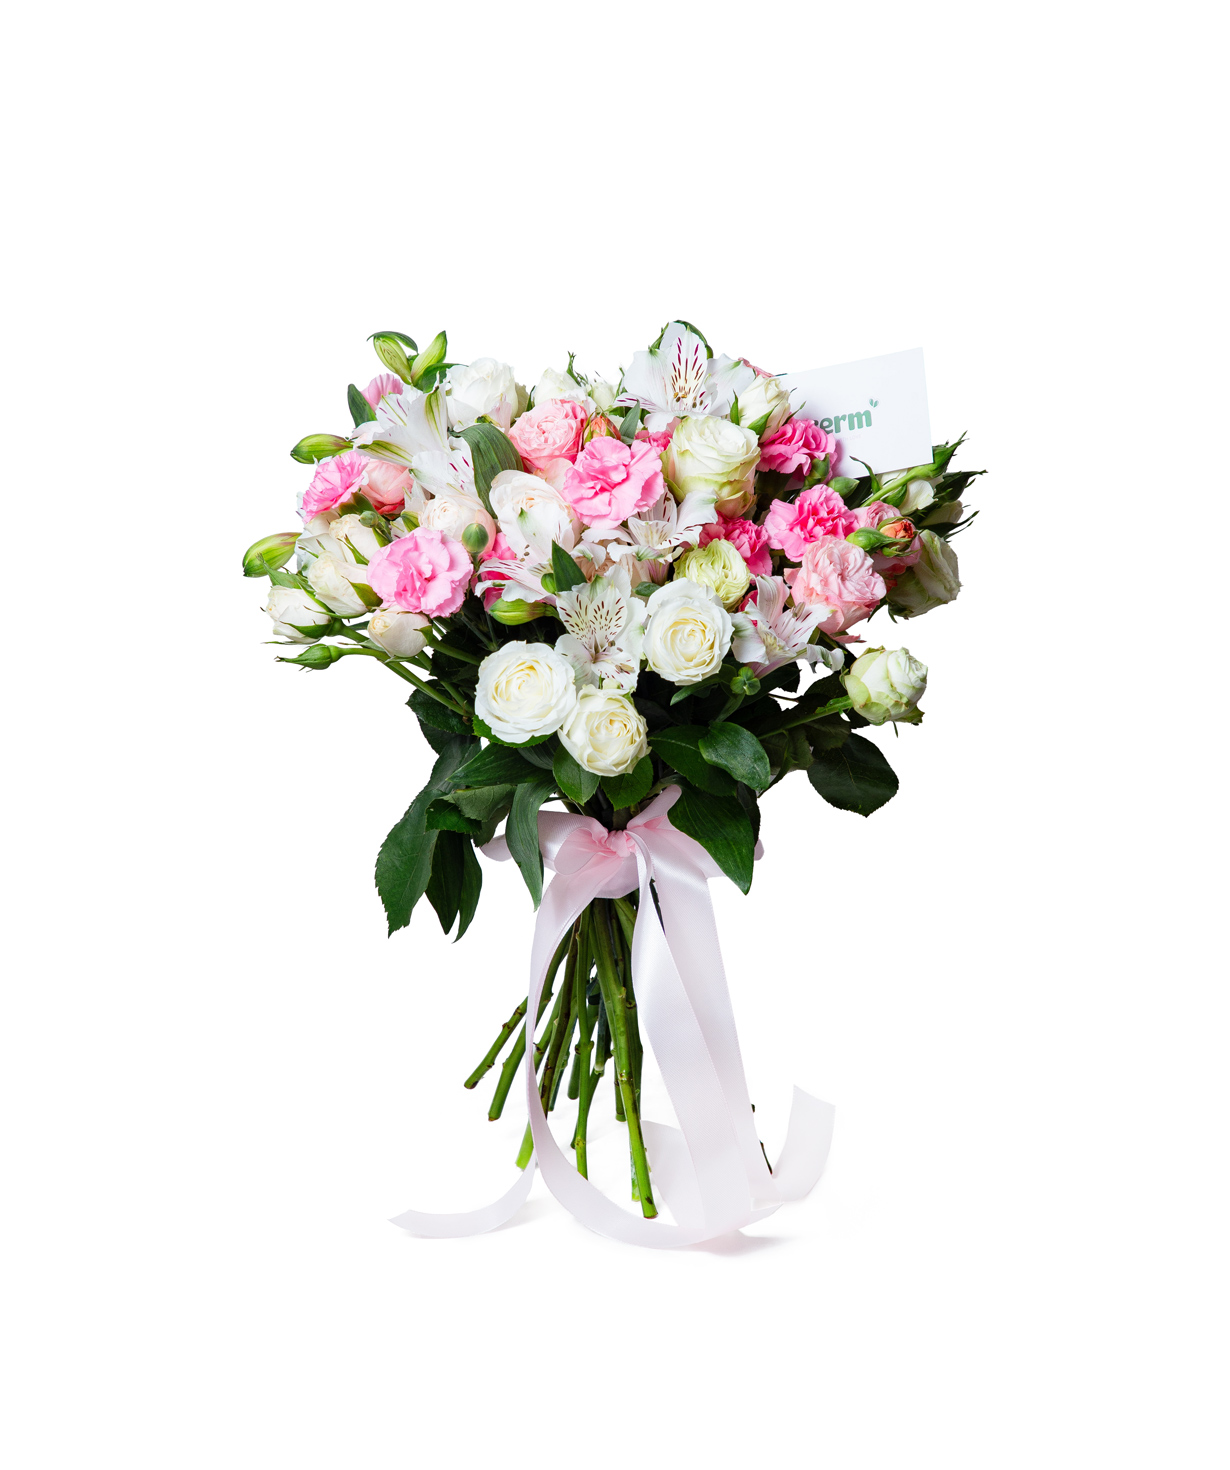 Ծաղկեփունջ «Տիրասիա» փնջային վարդերով և ալստրոմերիաներով